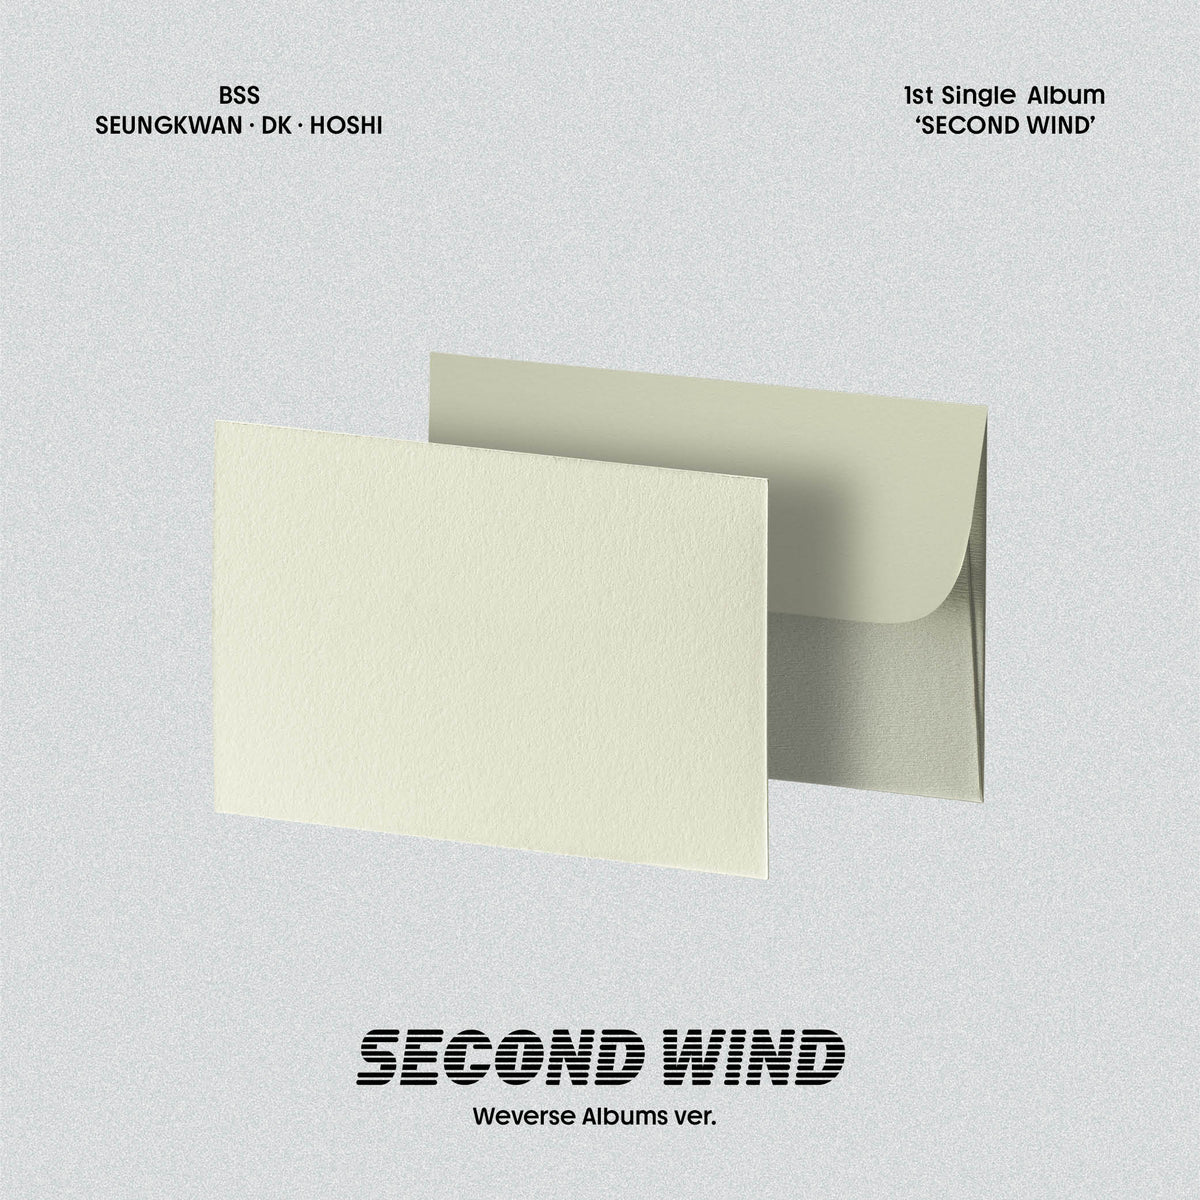 BSS (SEVENTEEN) - 1st Single Album [SECOND WIND] Weverse Albums ver.